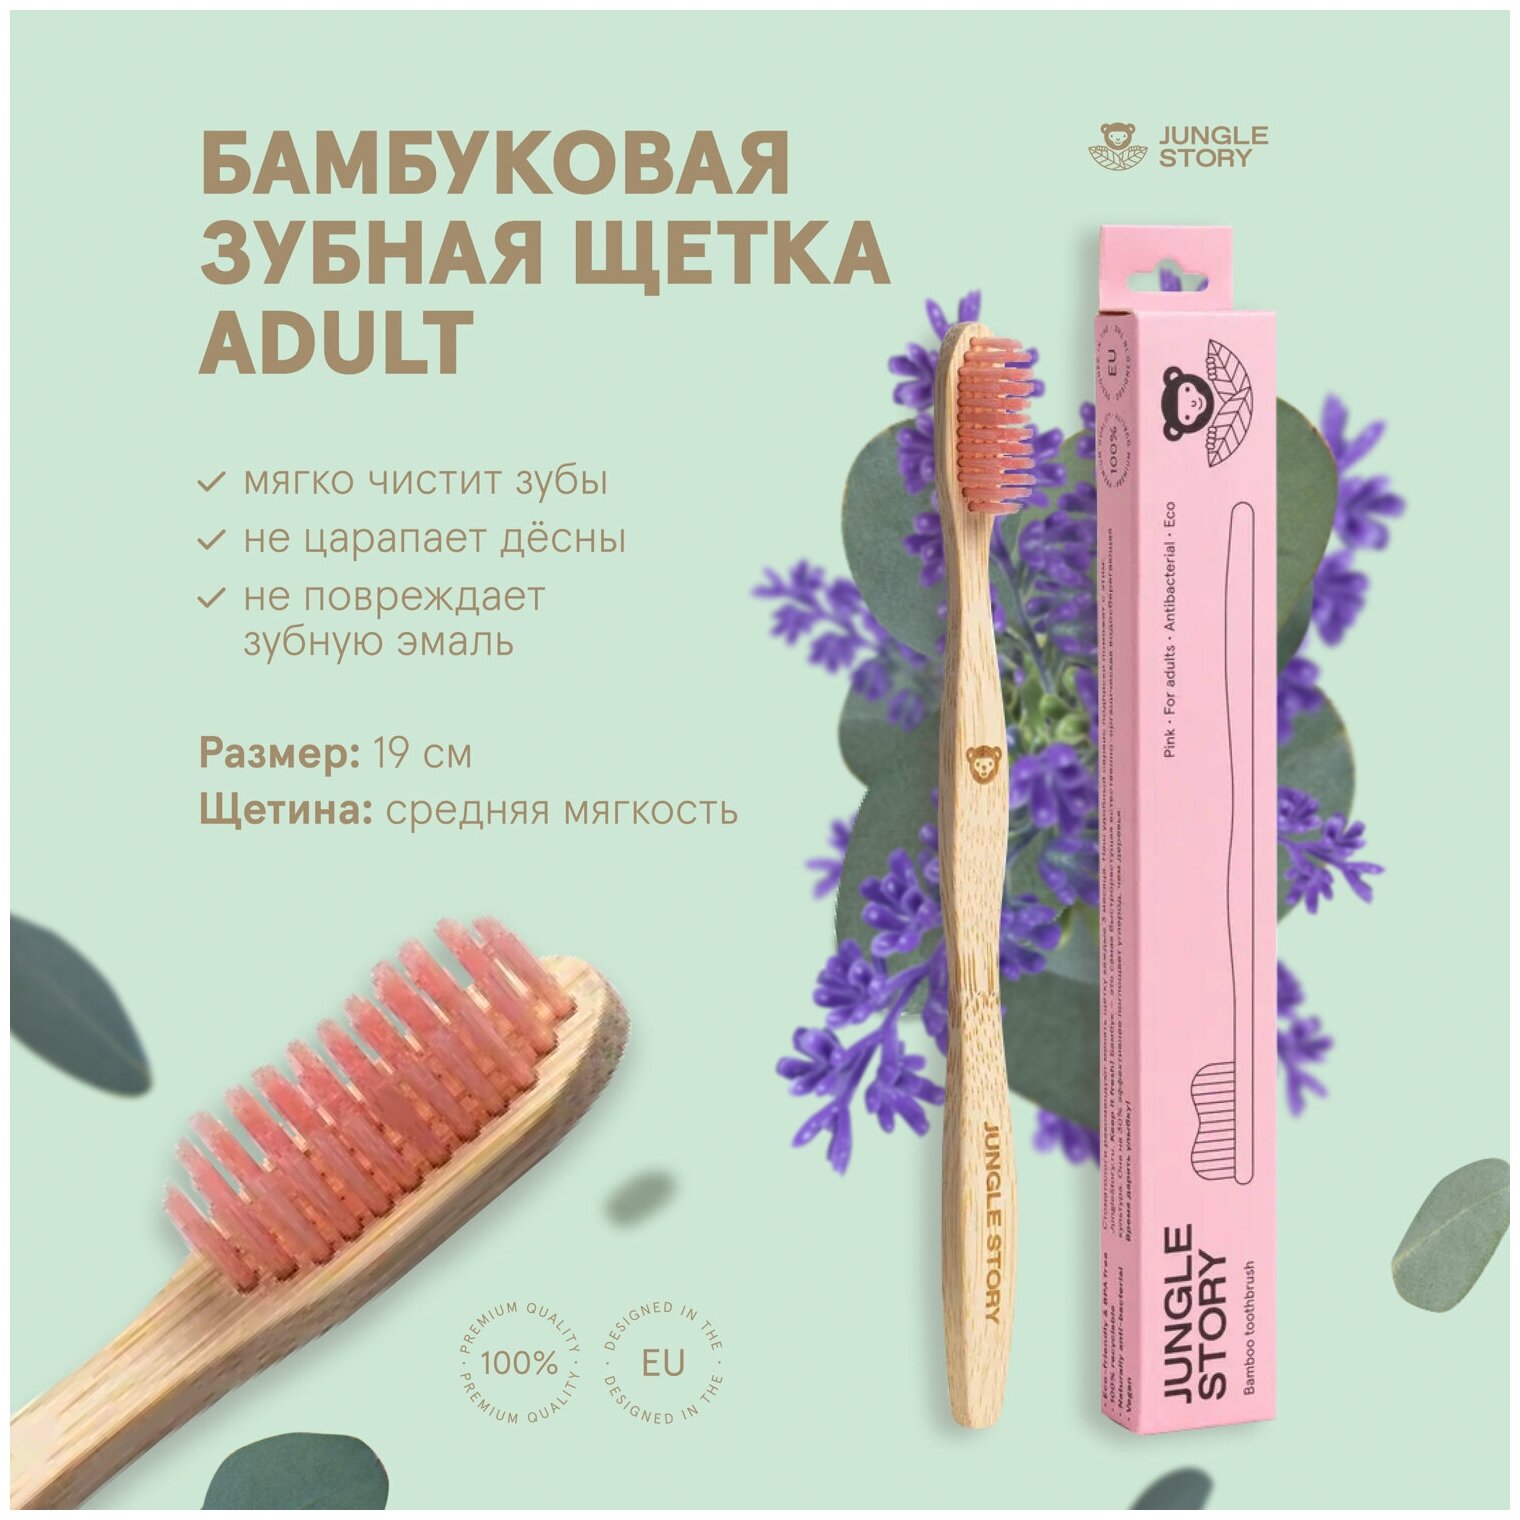 Бамбуковая зубная щётка с щетиной средней жесткости Розовая